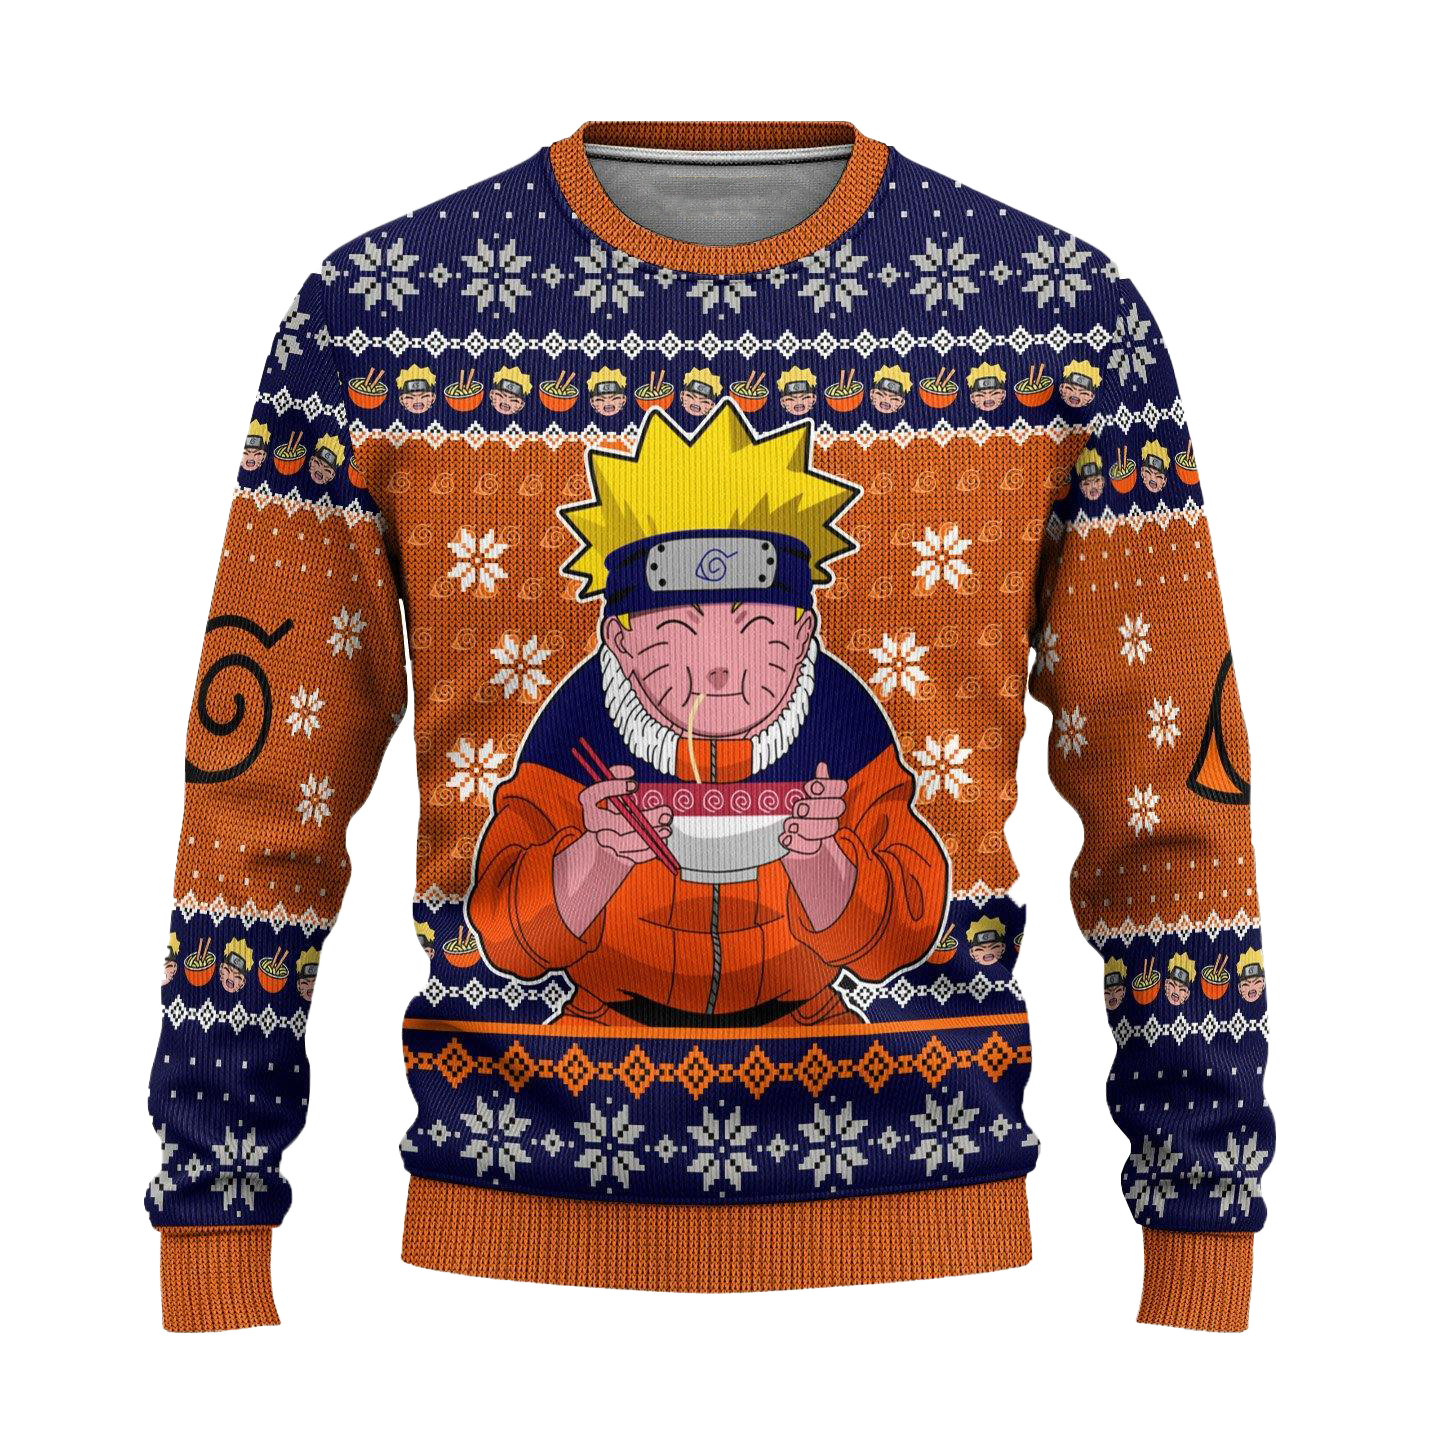 Naruto Ramen Anime Ugly Christmas Sweater Xmas Gift